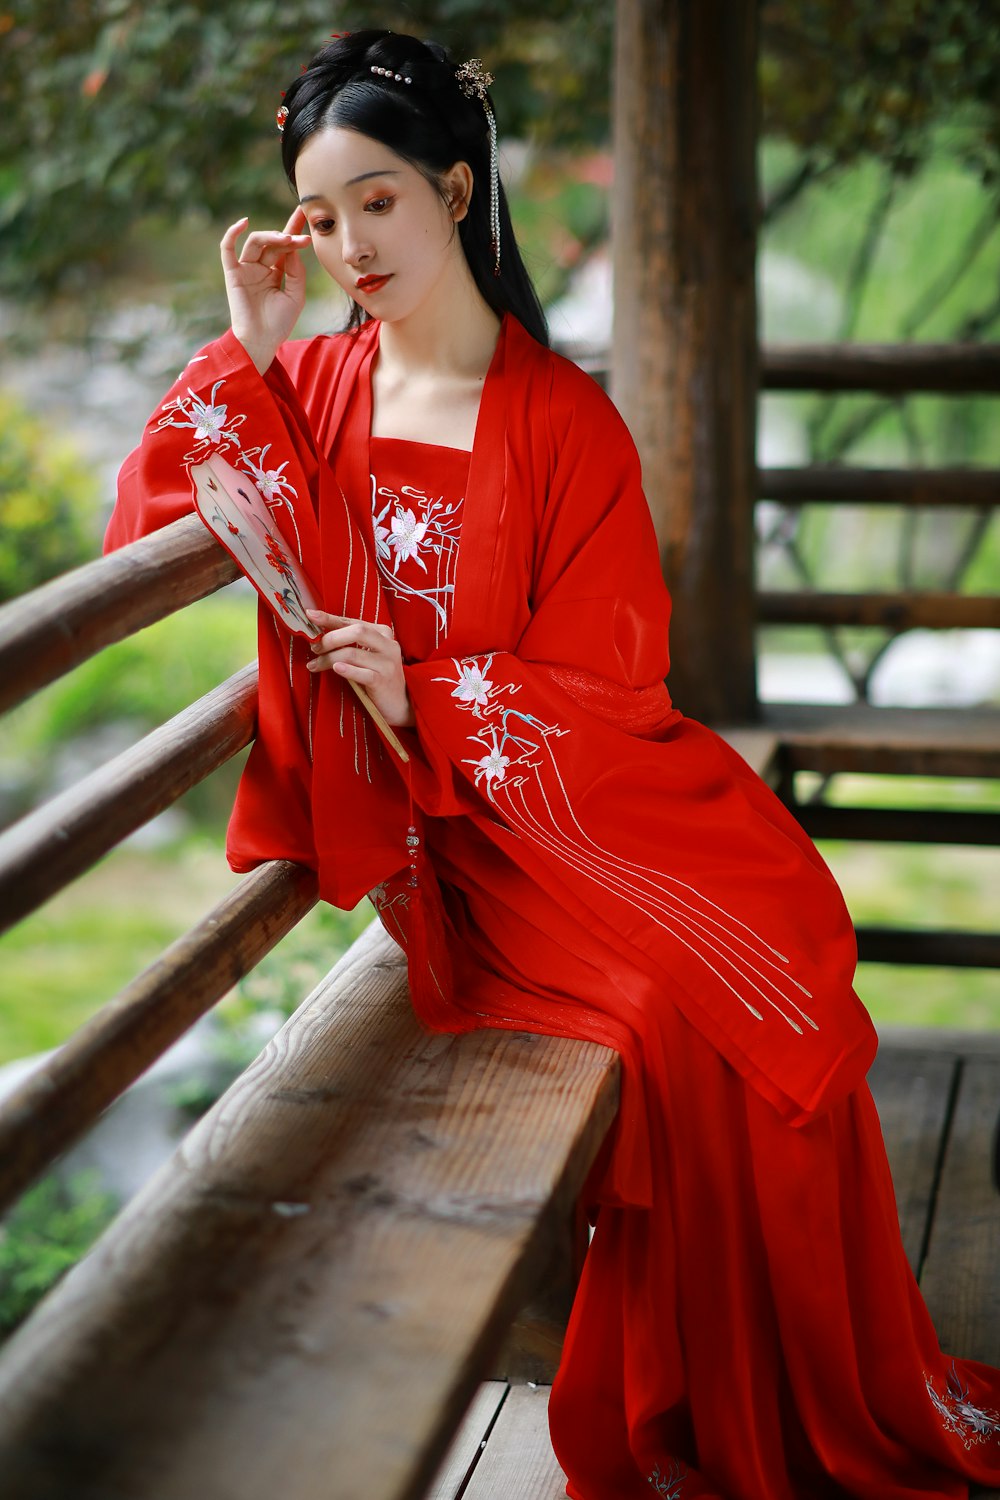 Femme en kimono floral rouge et blanc assise sur un banc en bois brun pendant la journée